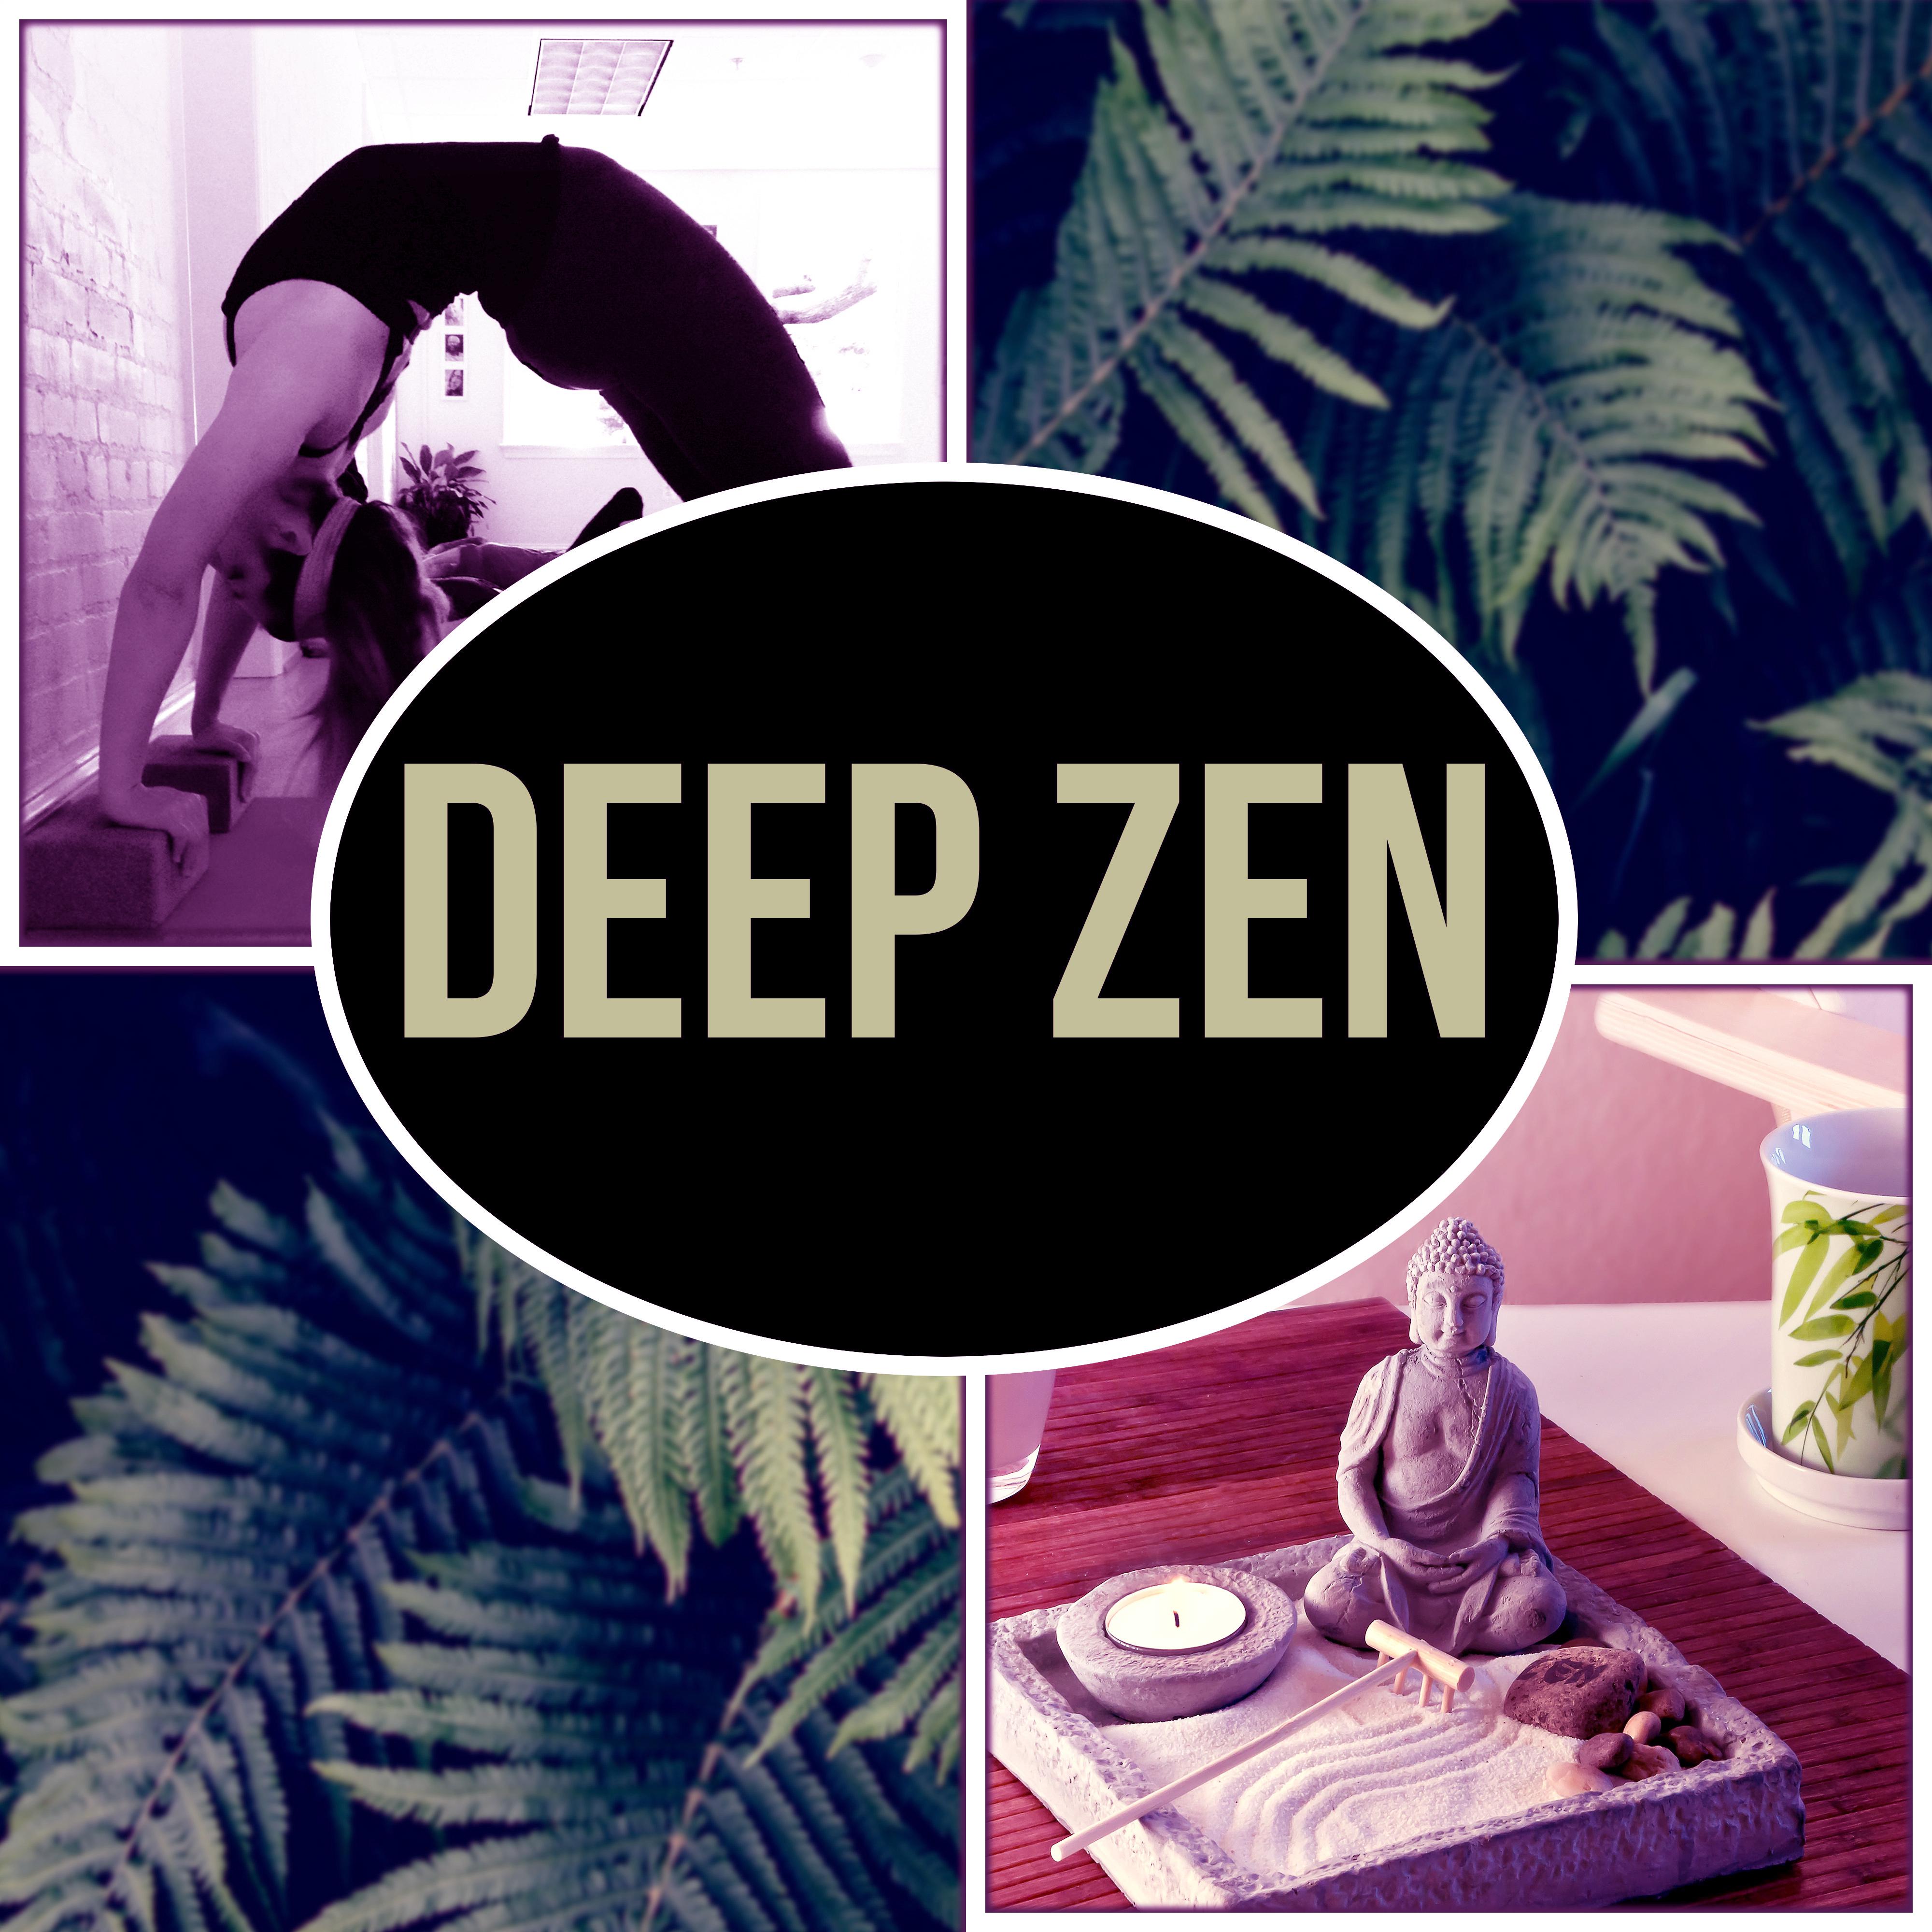 Deep Zen – Meditation, Yoga Music and Reiki Healing, Nature, Zen Garden, Massage, Mindfulness